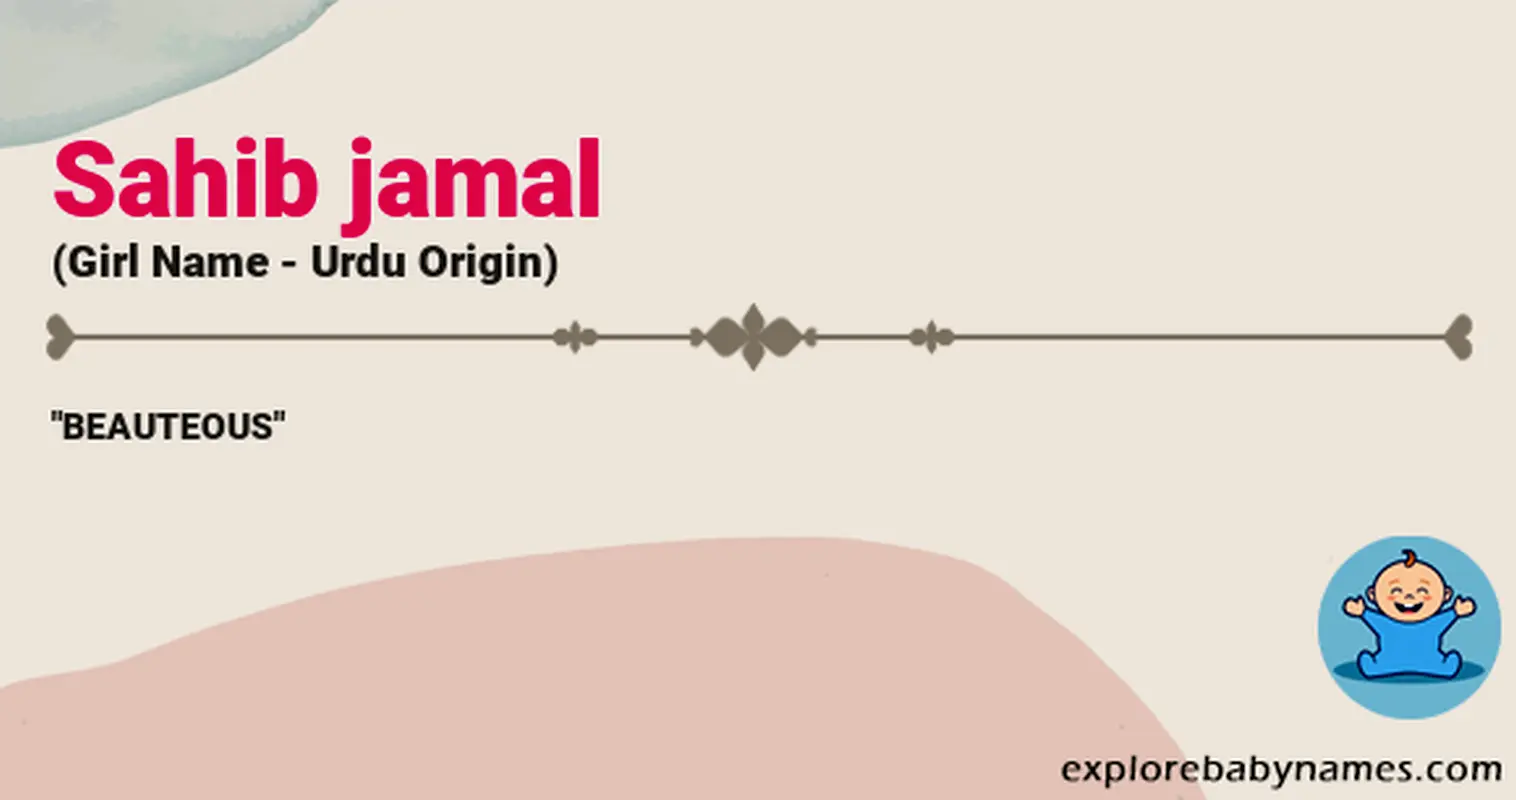 Meaning of Sahib jamal